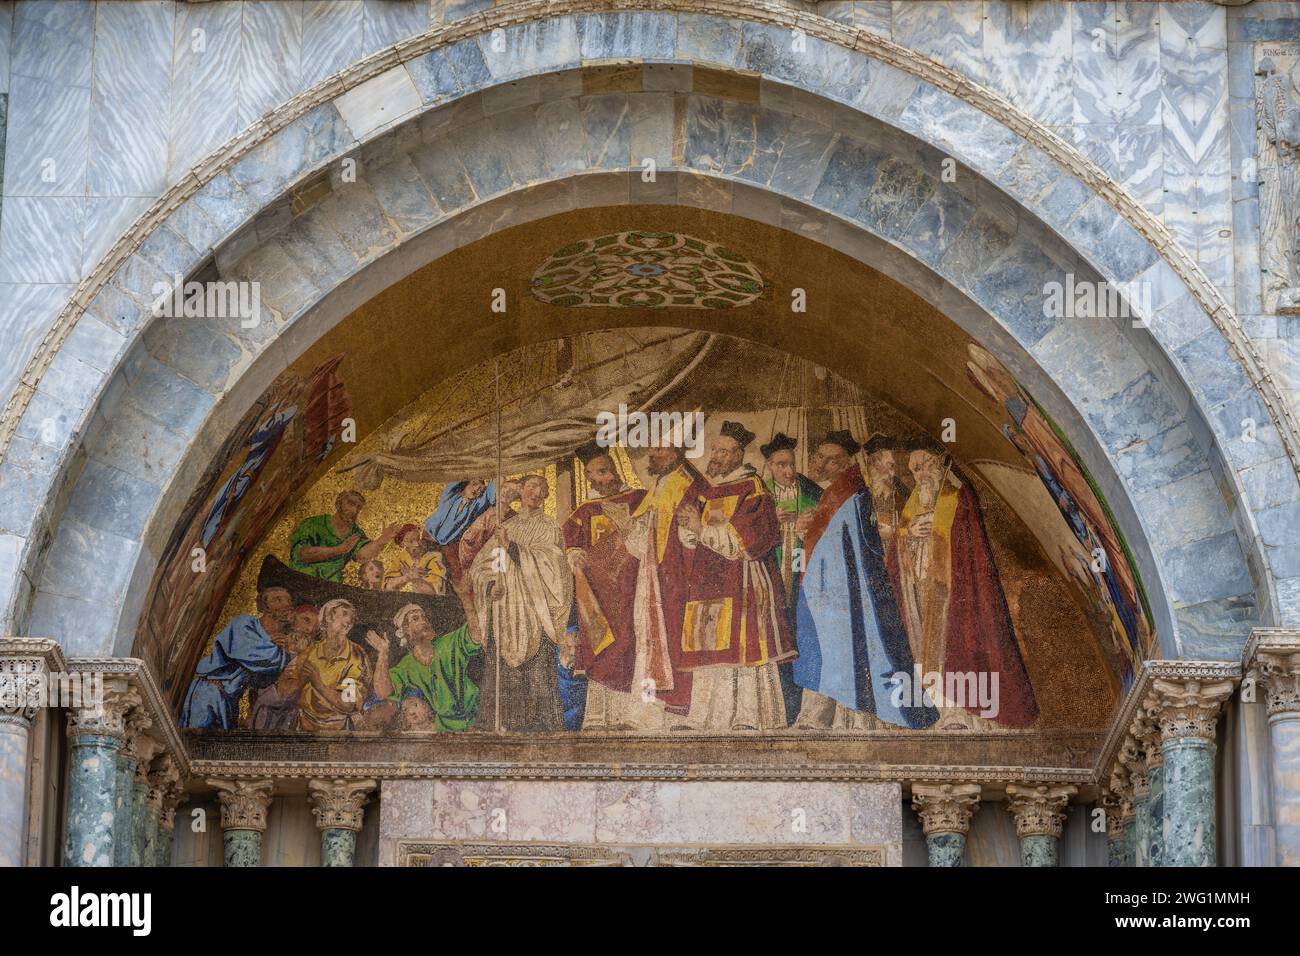 Détail mosaïque du portail de la basilique San Marco, St. Porte de Clément, Venise, Italie Banque D'Images